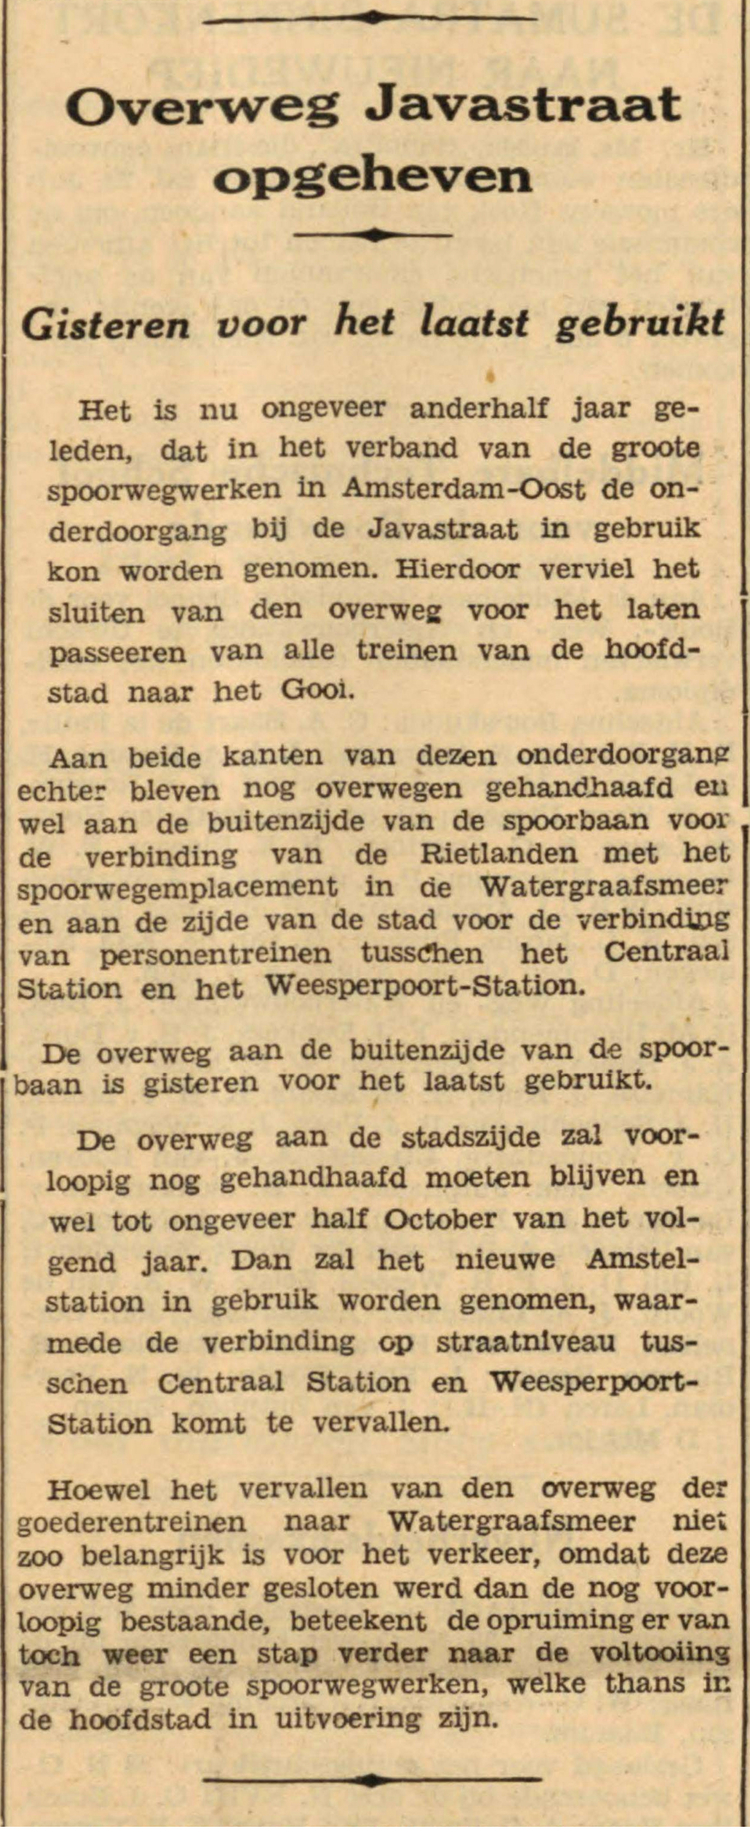 16 juli 1938 - Overweg Javastraat opgeheven  